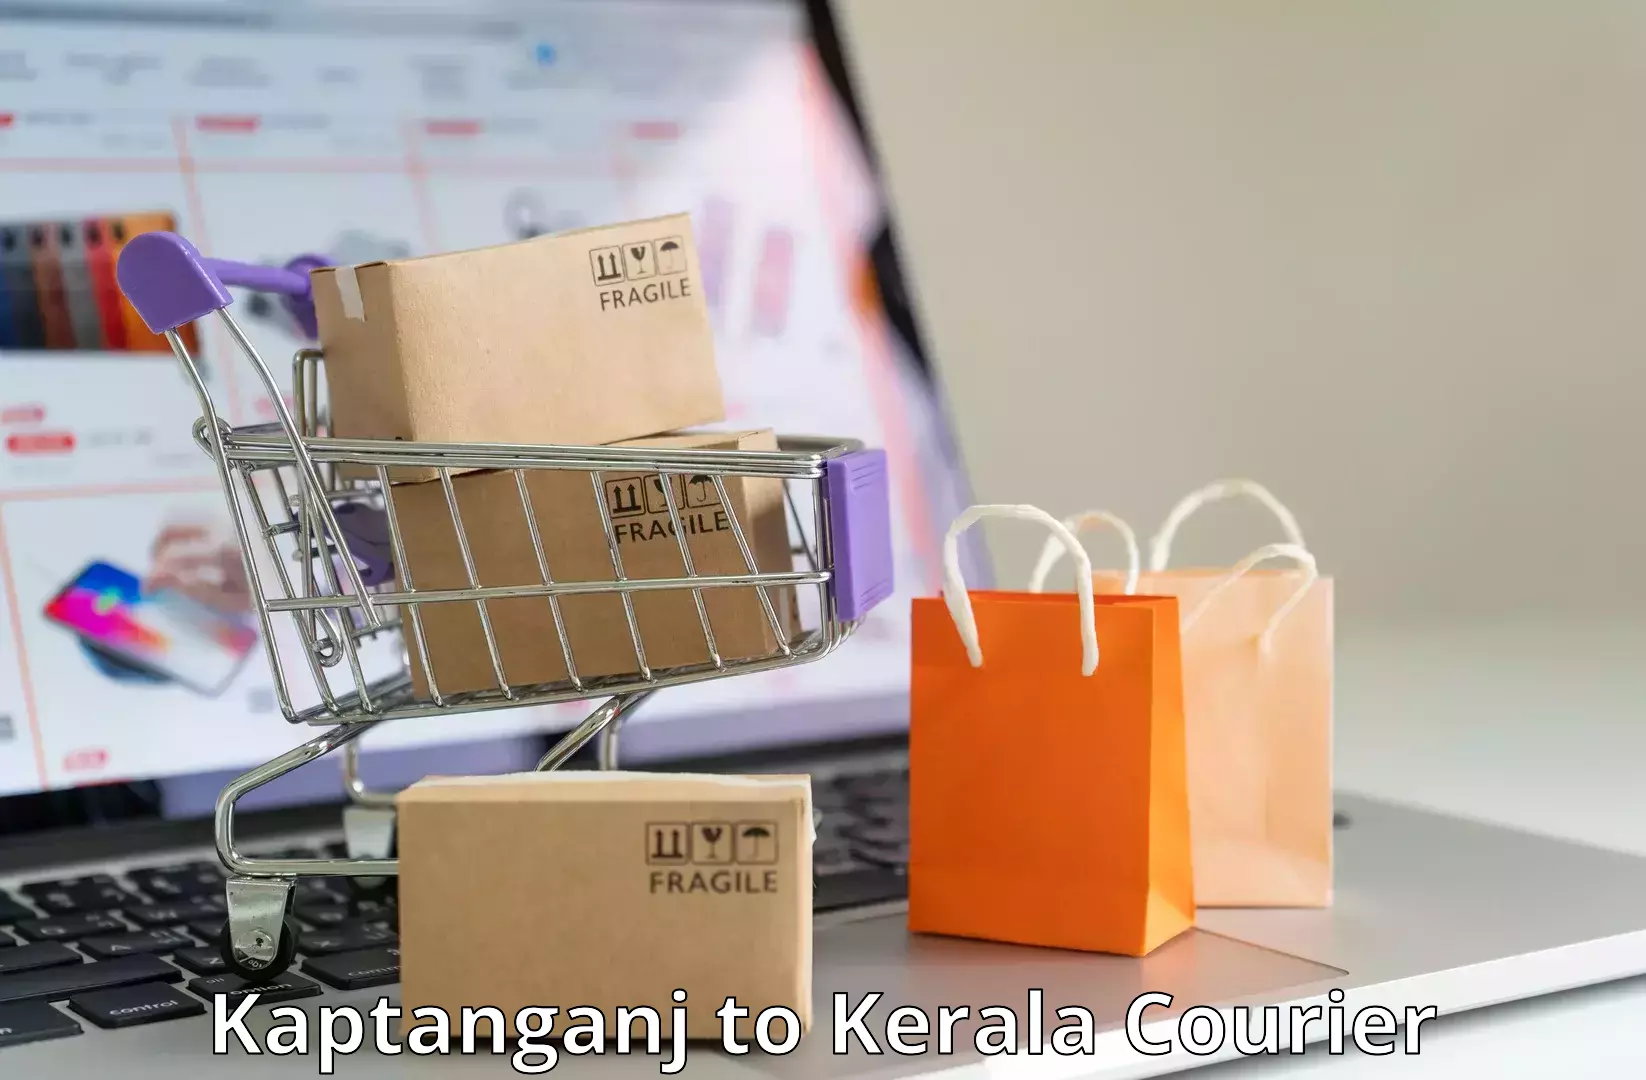 Large package courier Kaptanganj to Nilambur